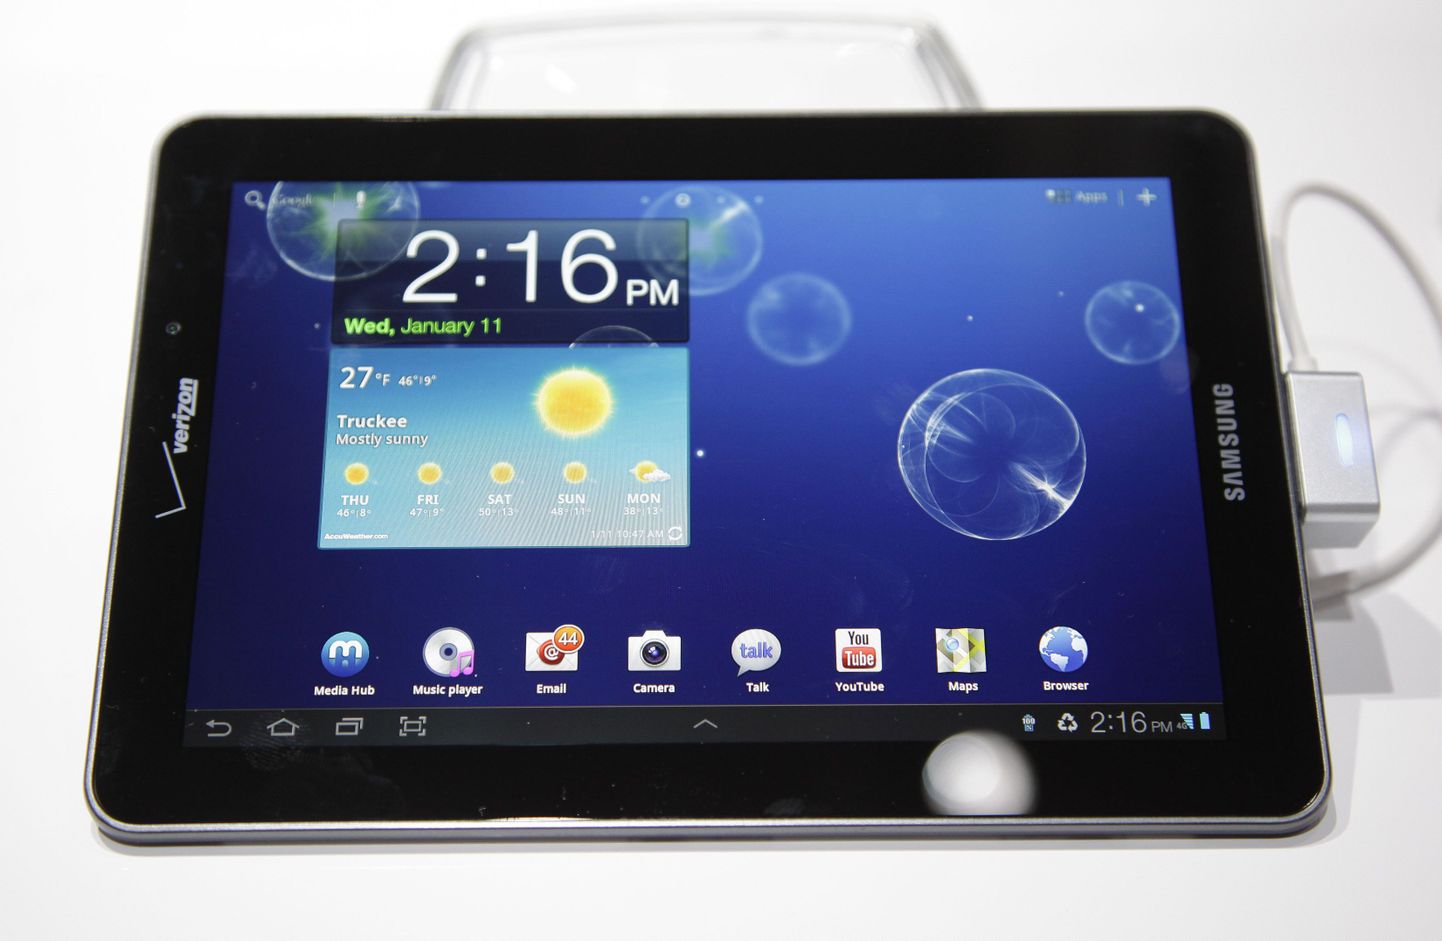 Samsung Galaxy Tab 7.7 LTE.